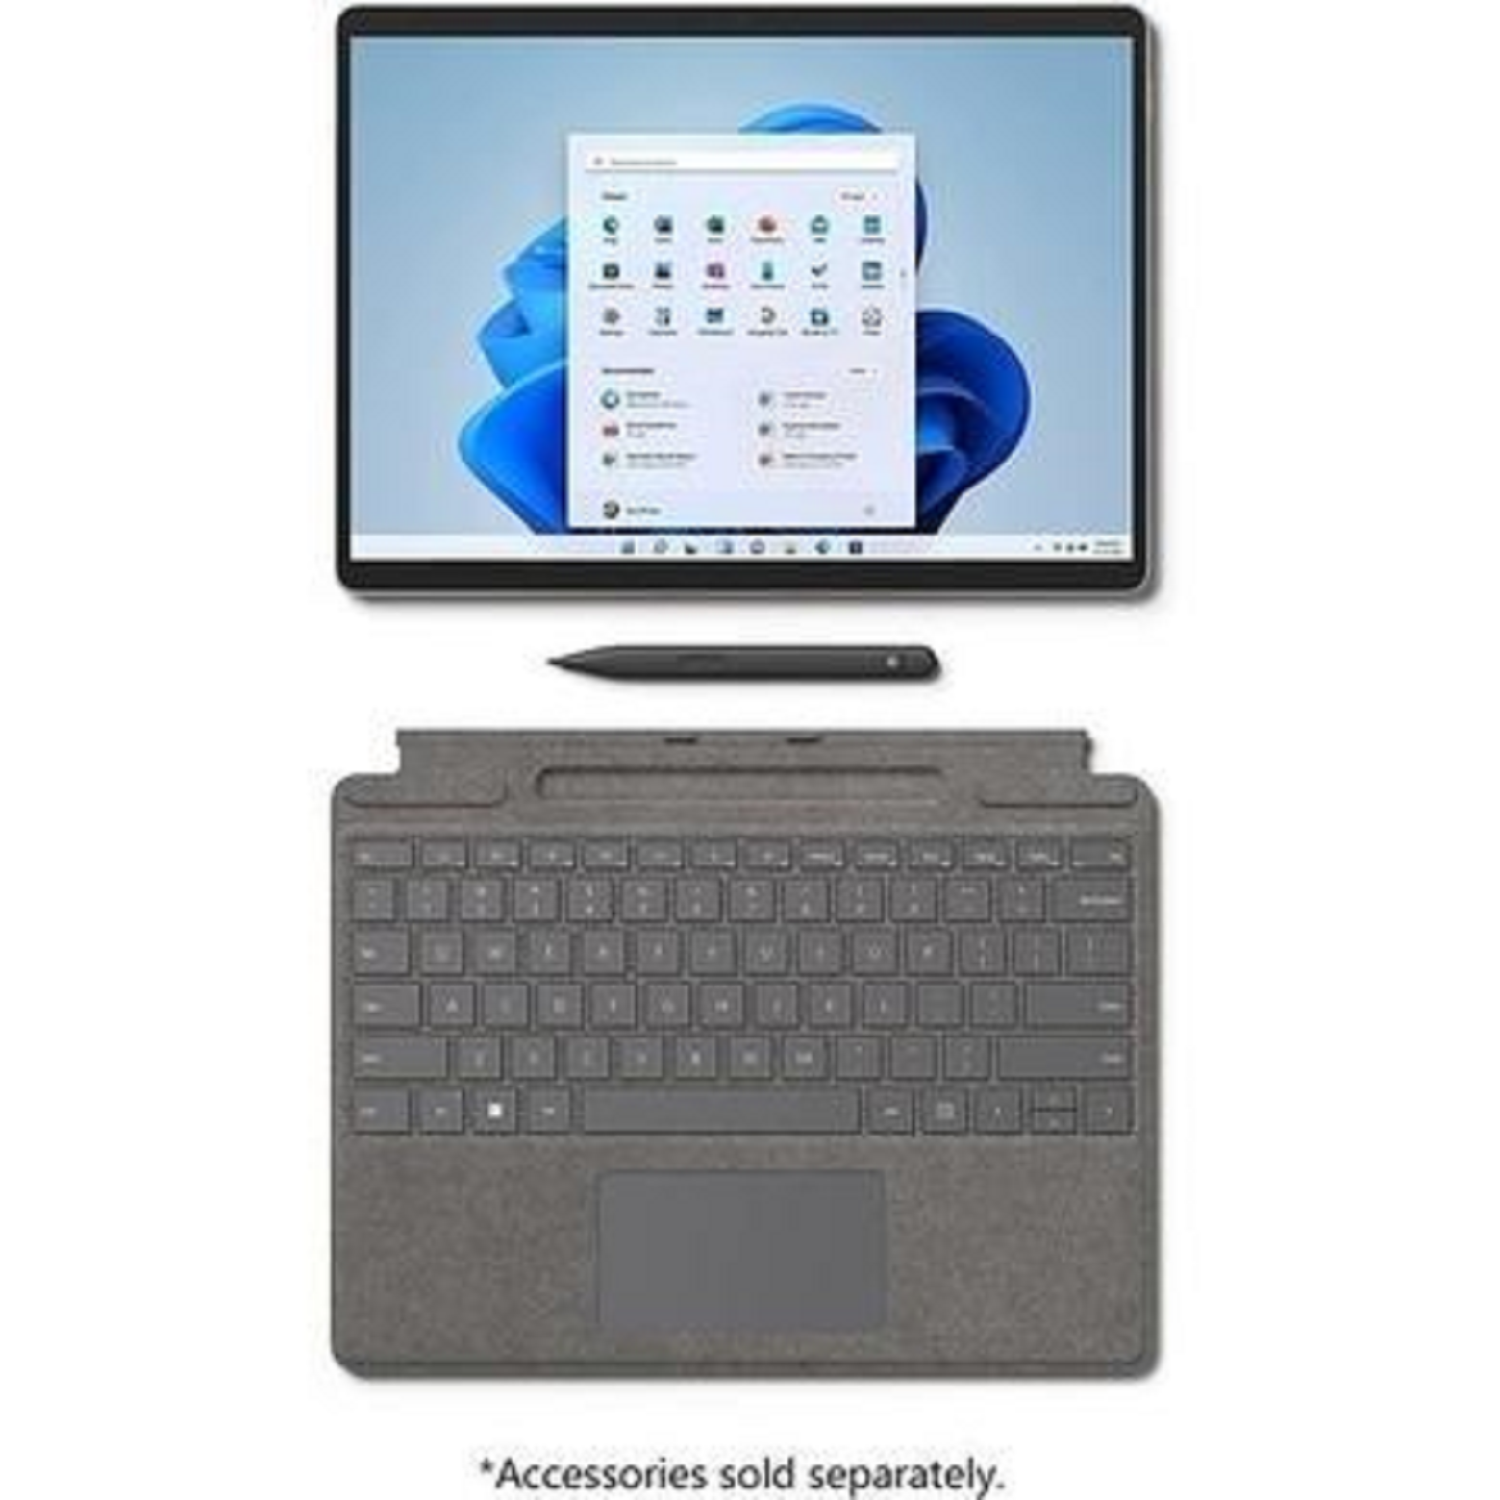 販売日本 Surface Microsoft Pro8 プラチナ i5/8GB/256GB ノートPC